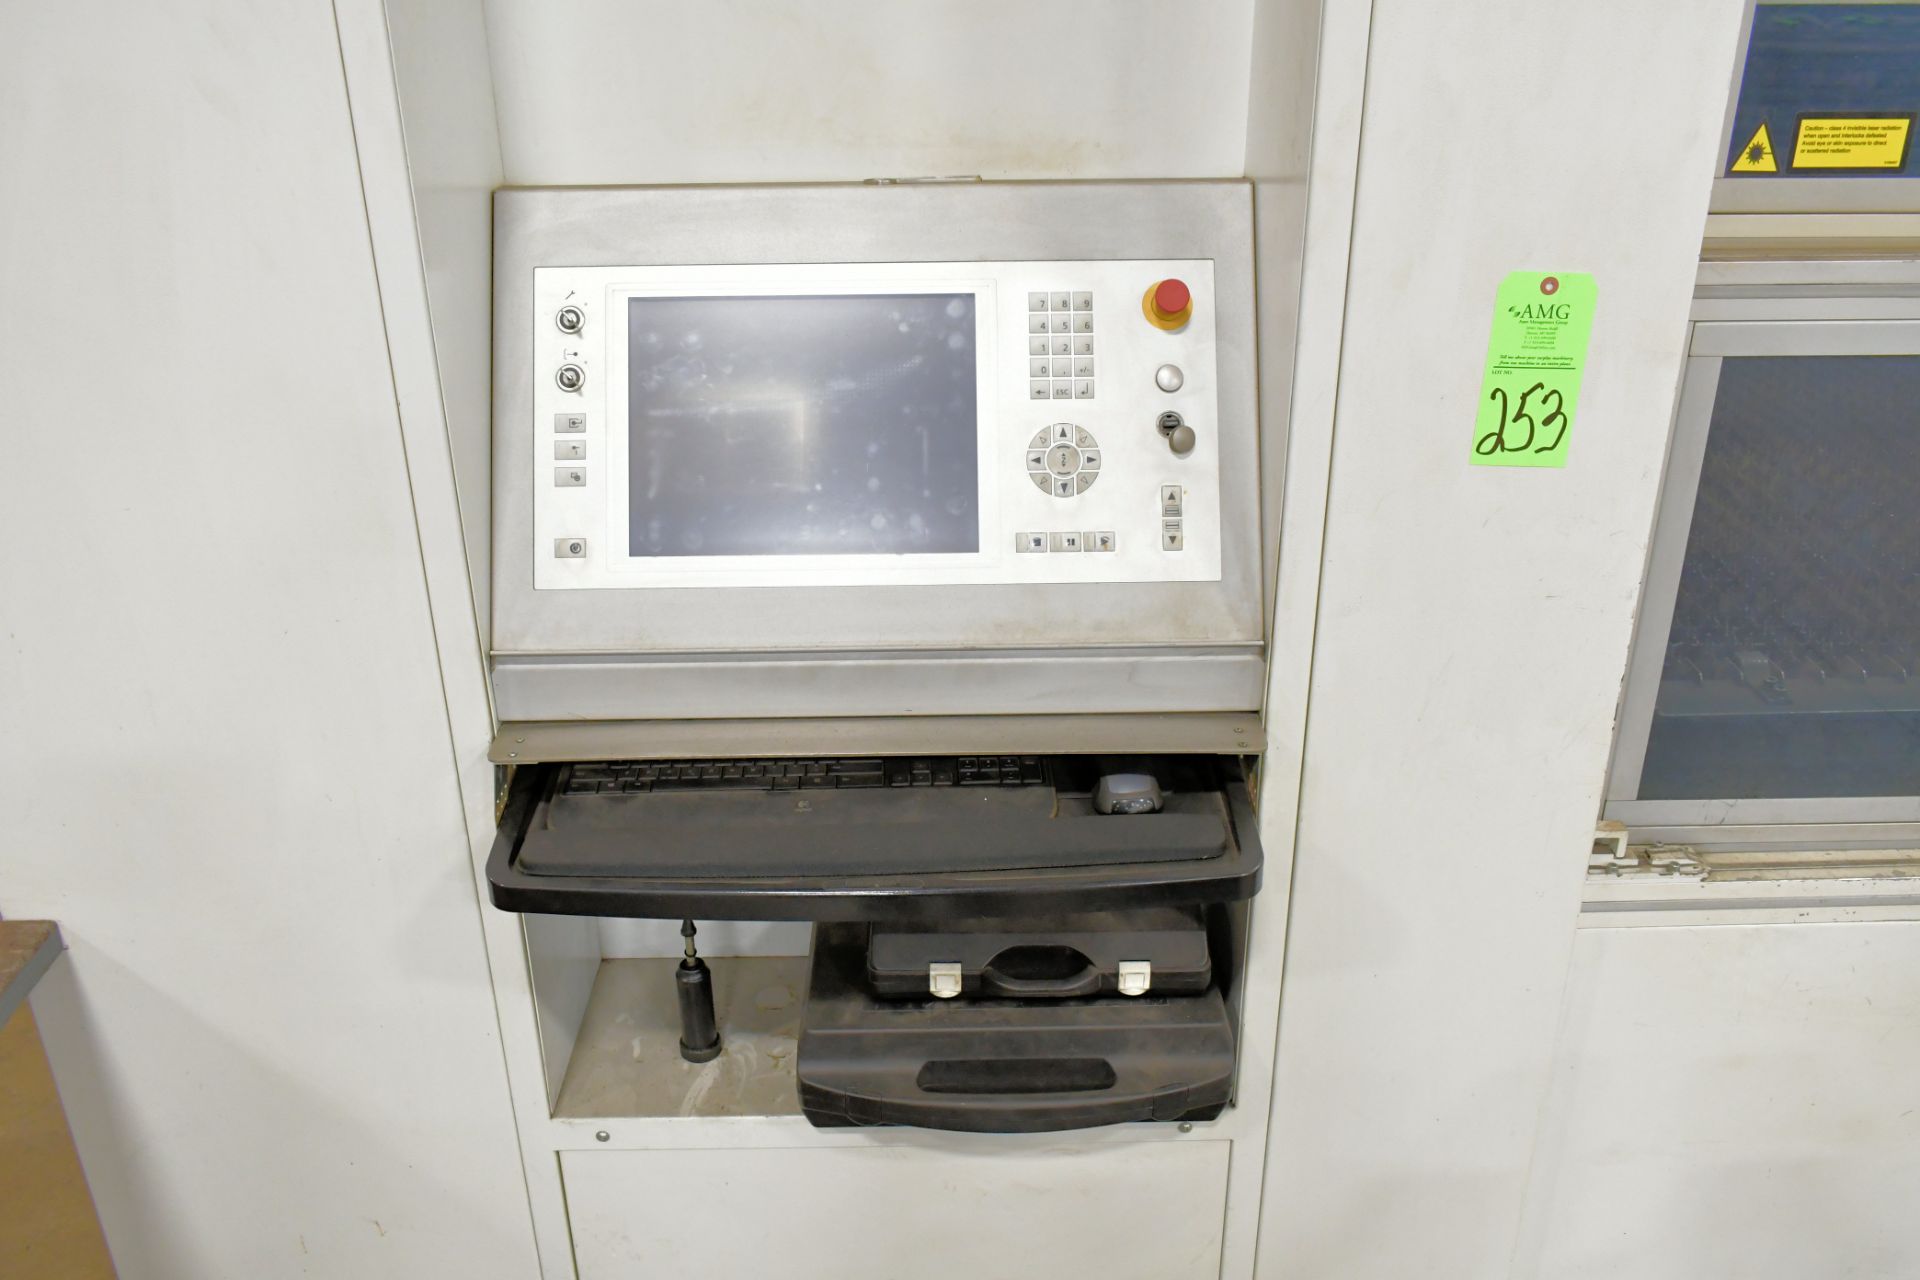 Trumpf Model TruLaser 1030, TruCoax 2500, CNC Laser Cutting Machine, S/n A0215A0147 (2011),120" x 60 - Image 5 of 9